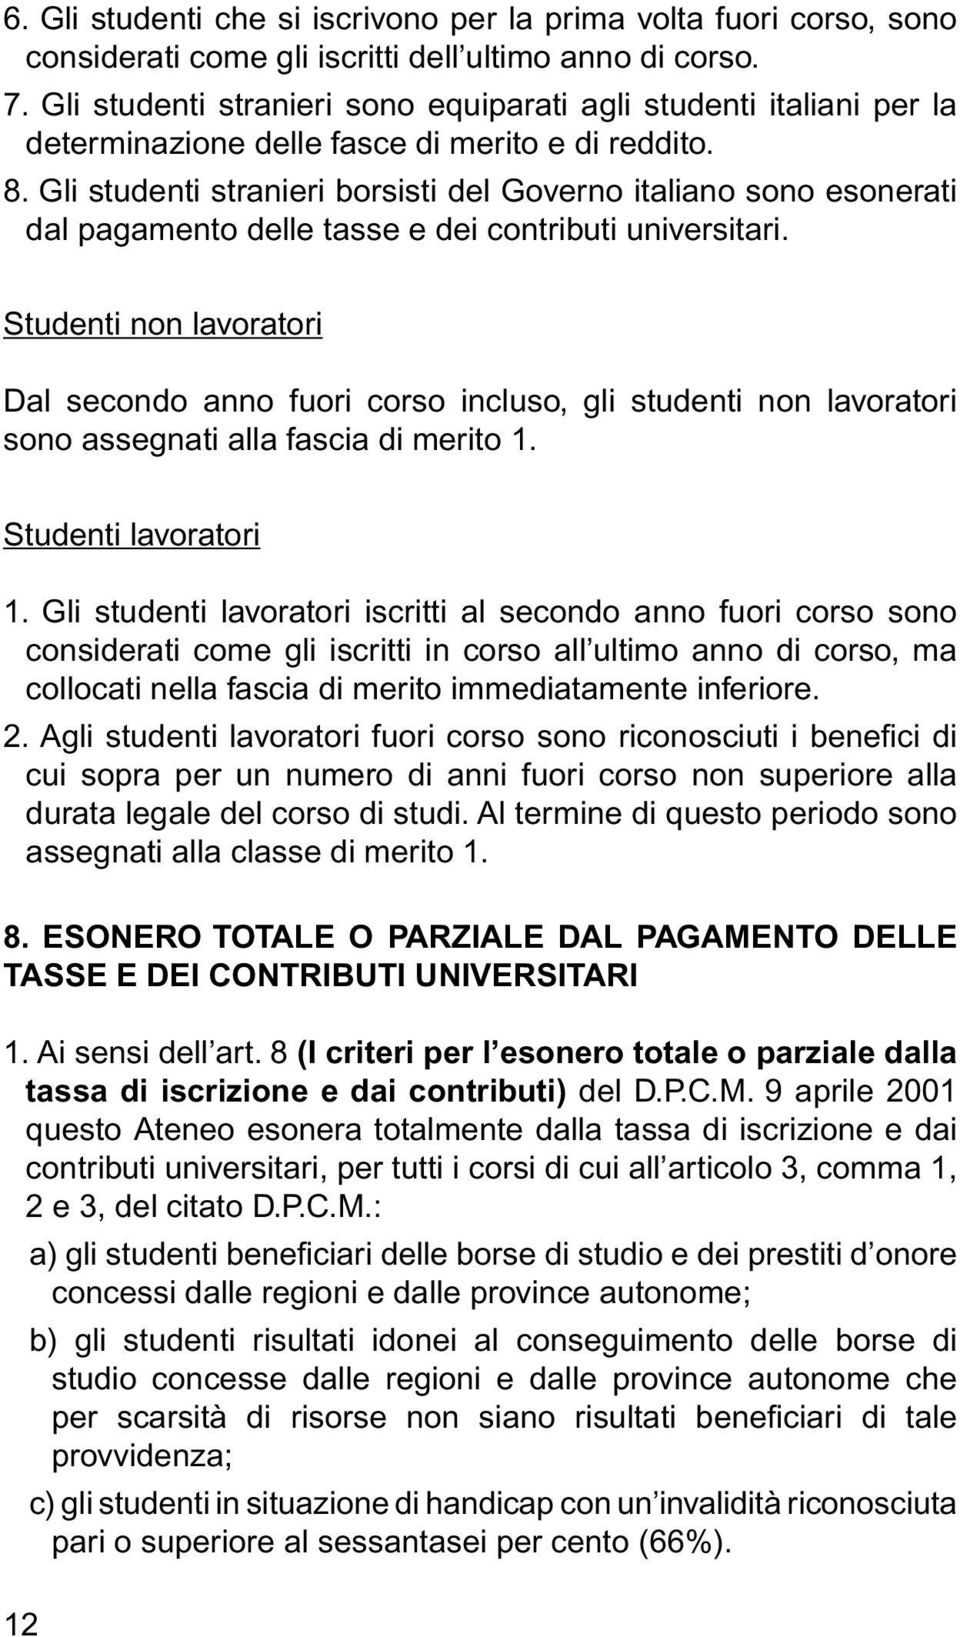 Gli studenti stranieri borsisti del Governo italiano sono esonerati dal pagamento delle tasse e dei contributi universitari.